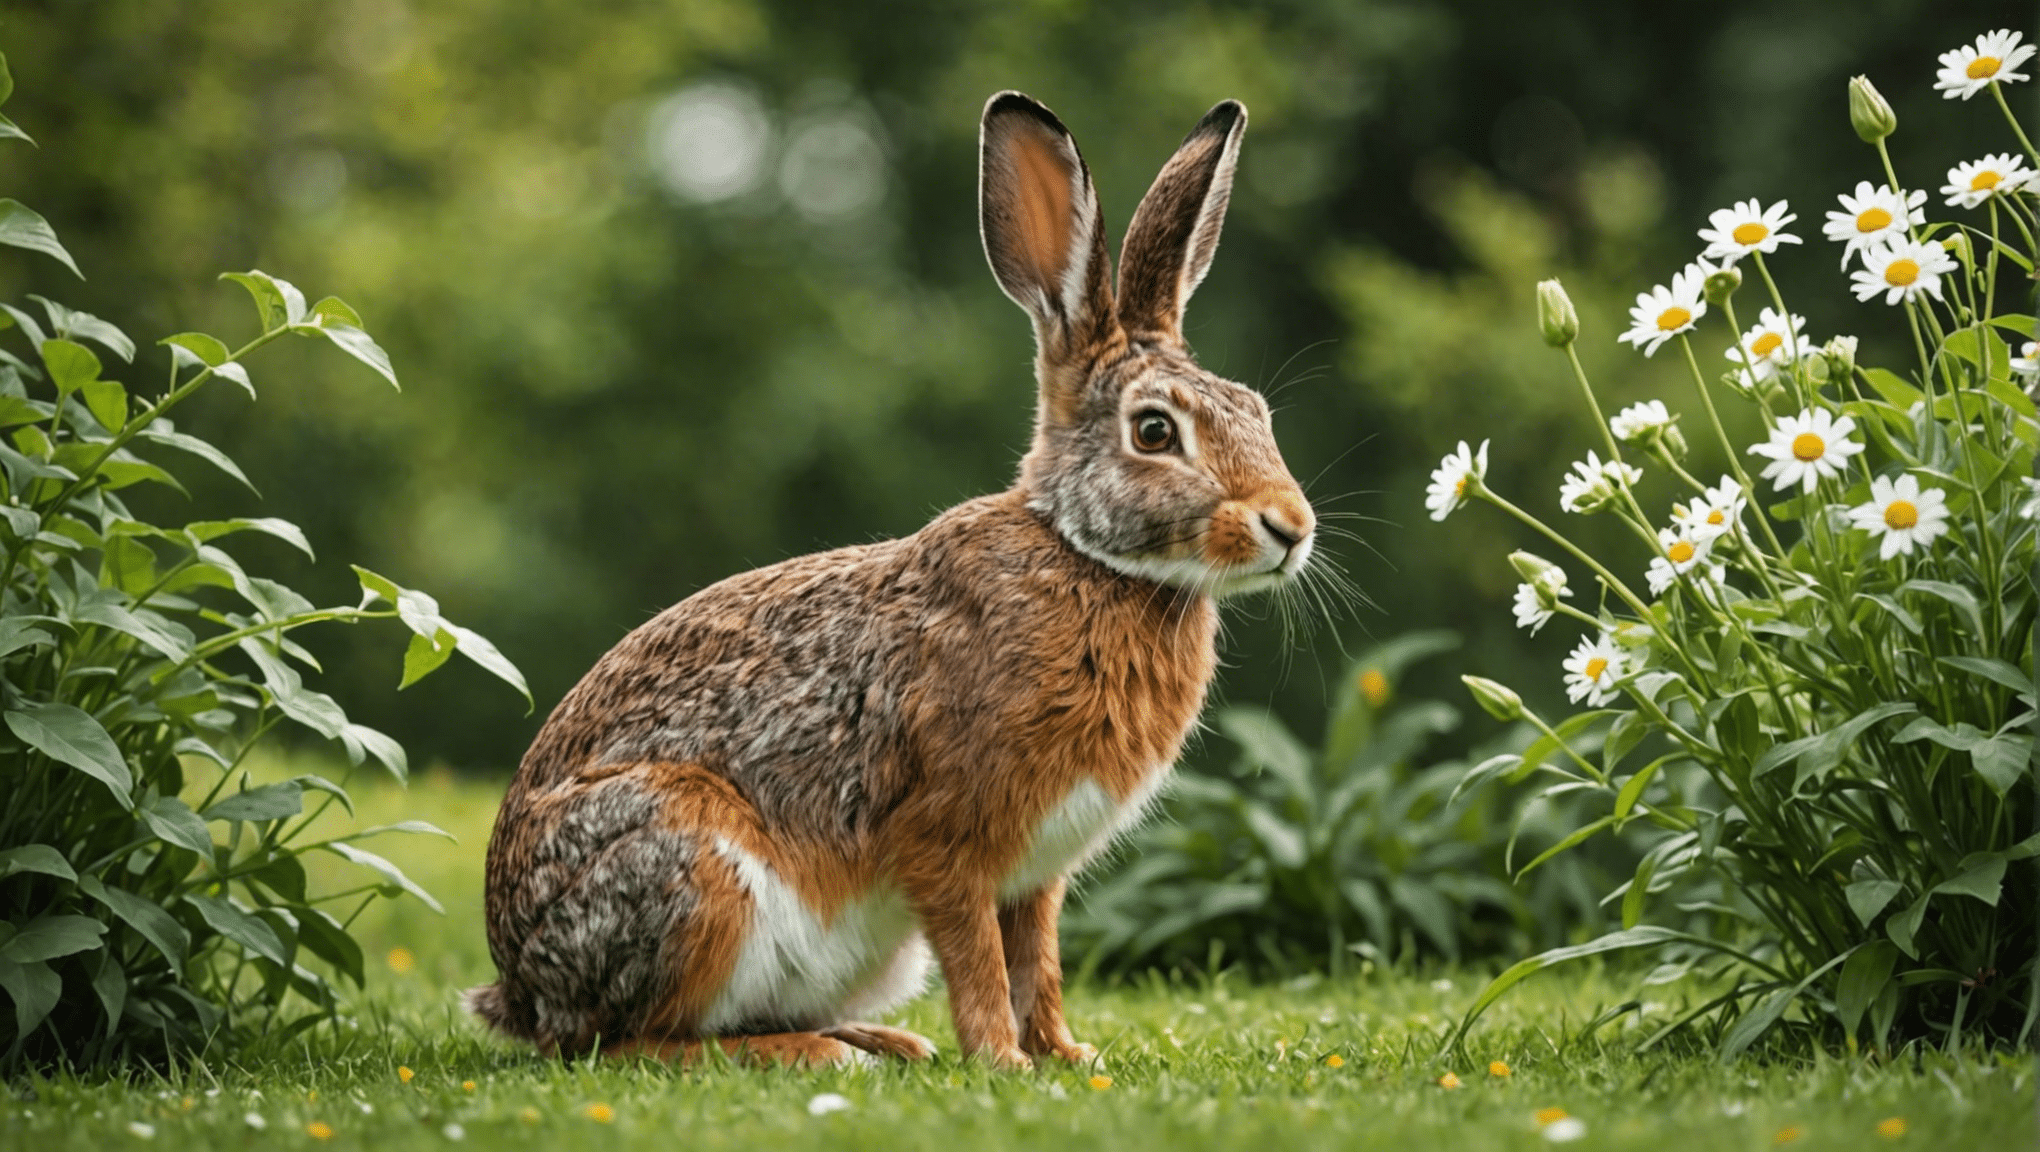 Descubra las distinciones entre liebres y conejos en esta profunda exploración de sus características y comportamientos únicos.